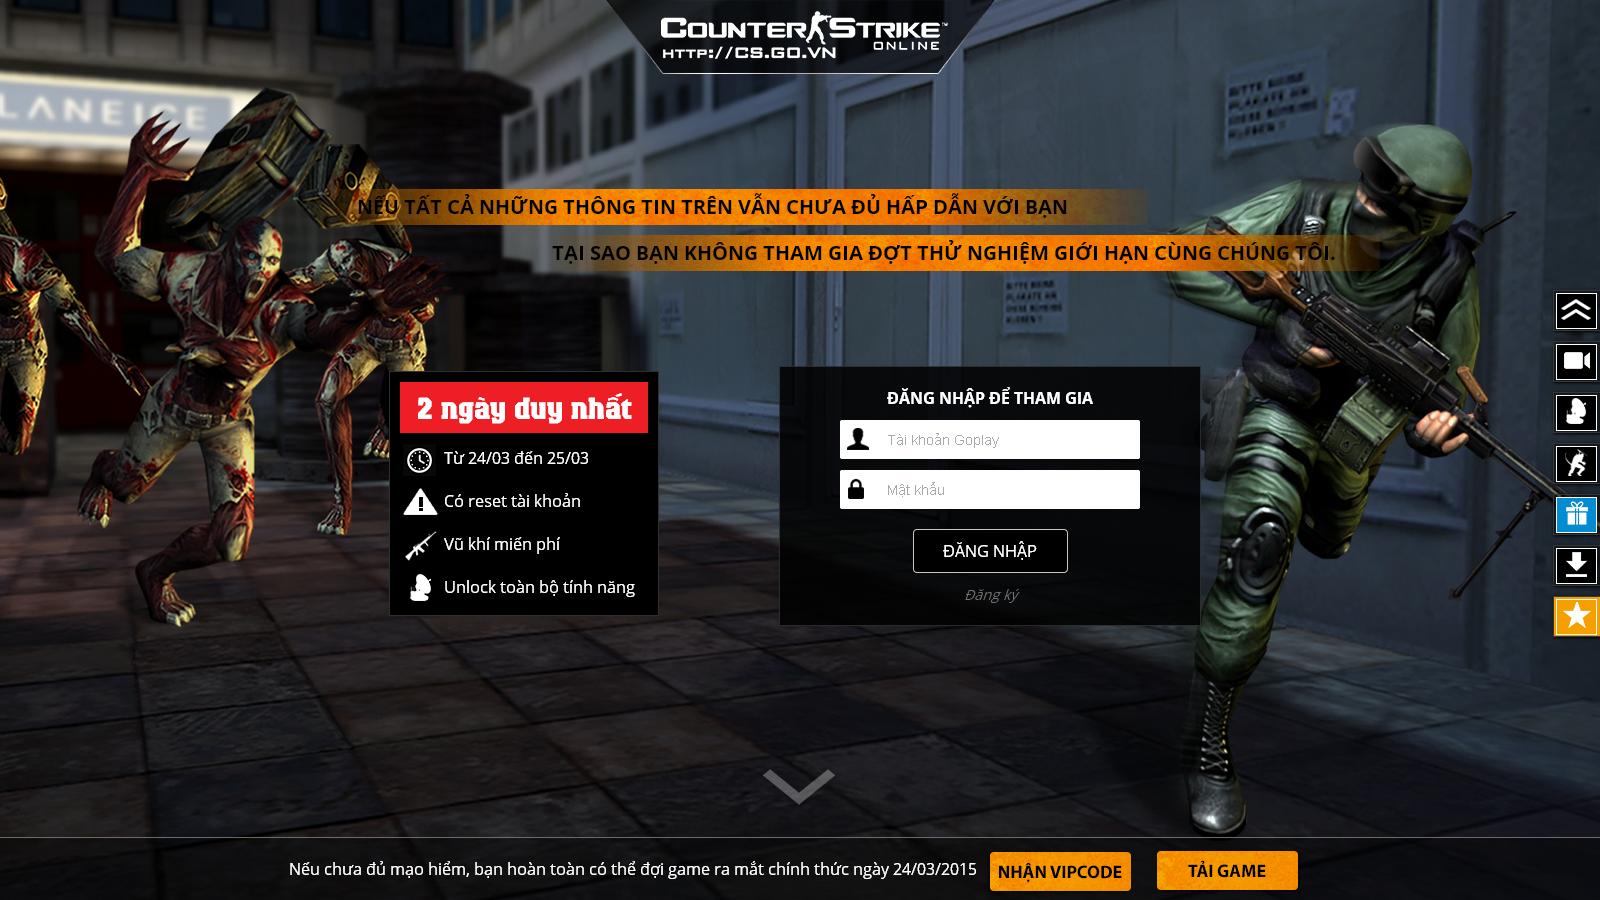 Counter-Strike Online sẽ chính thức ra mắt ngày 26.3.2015